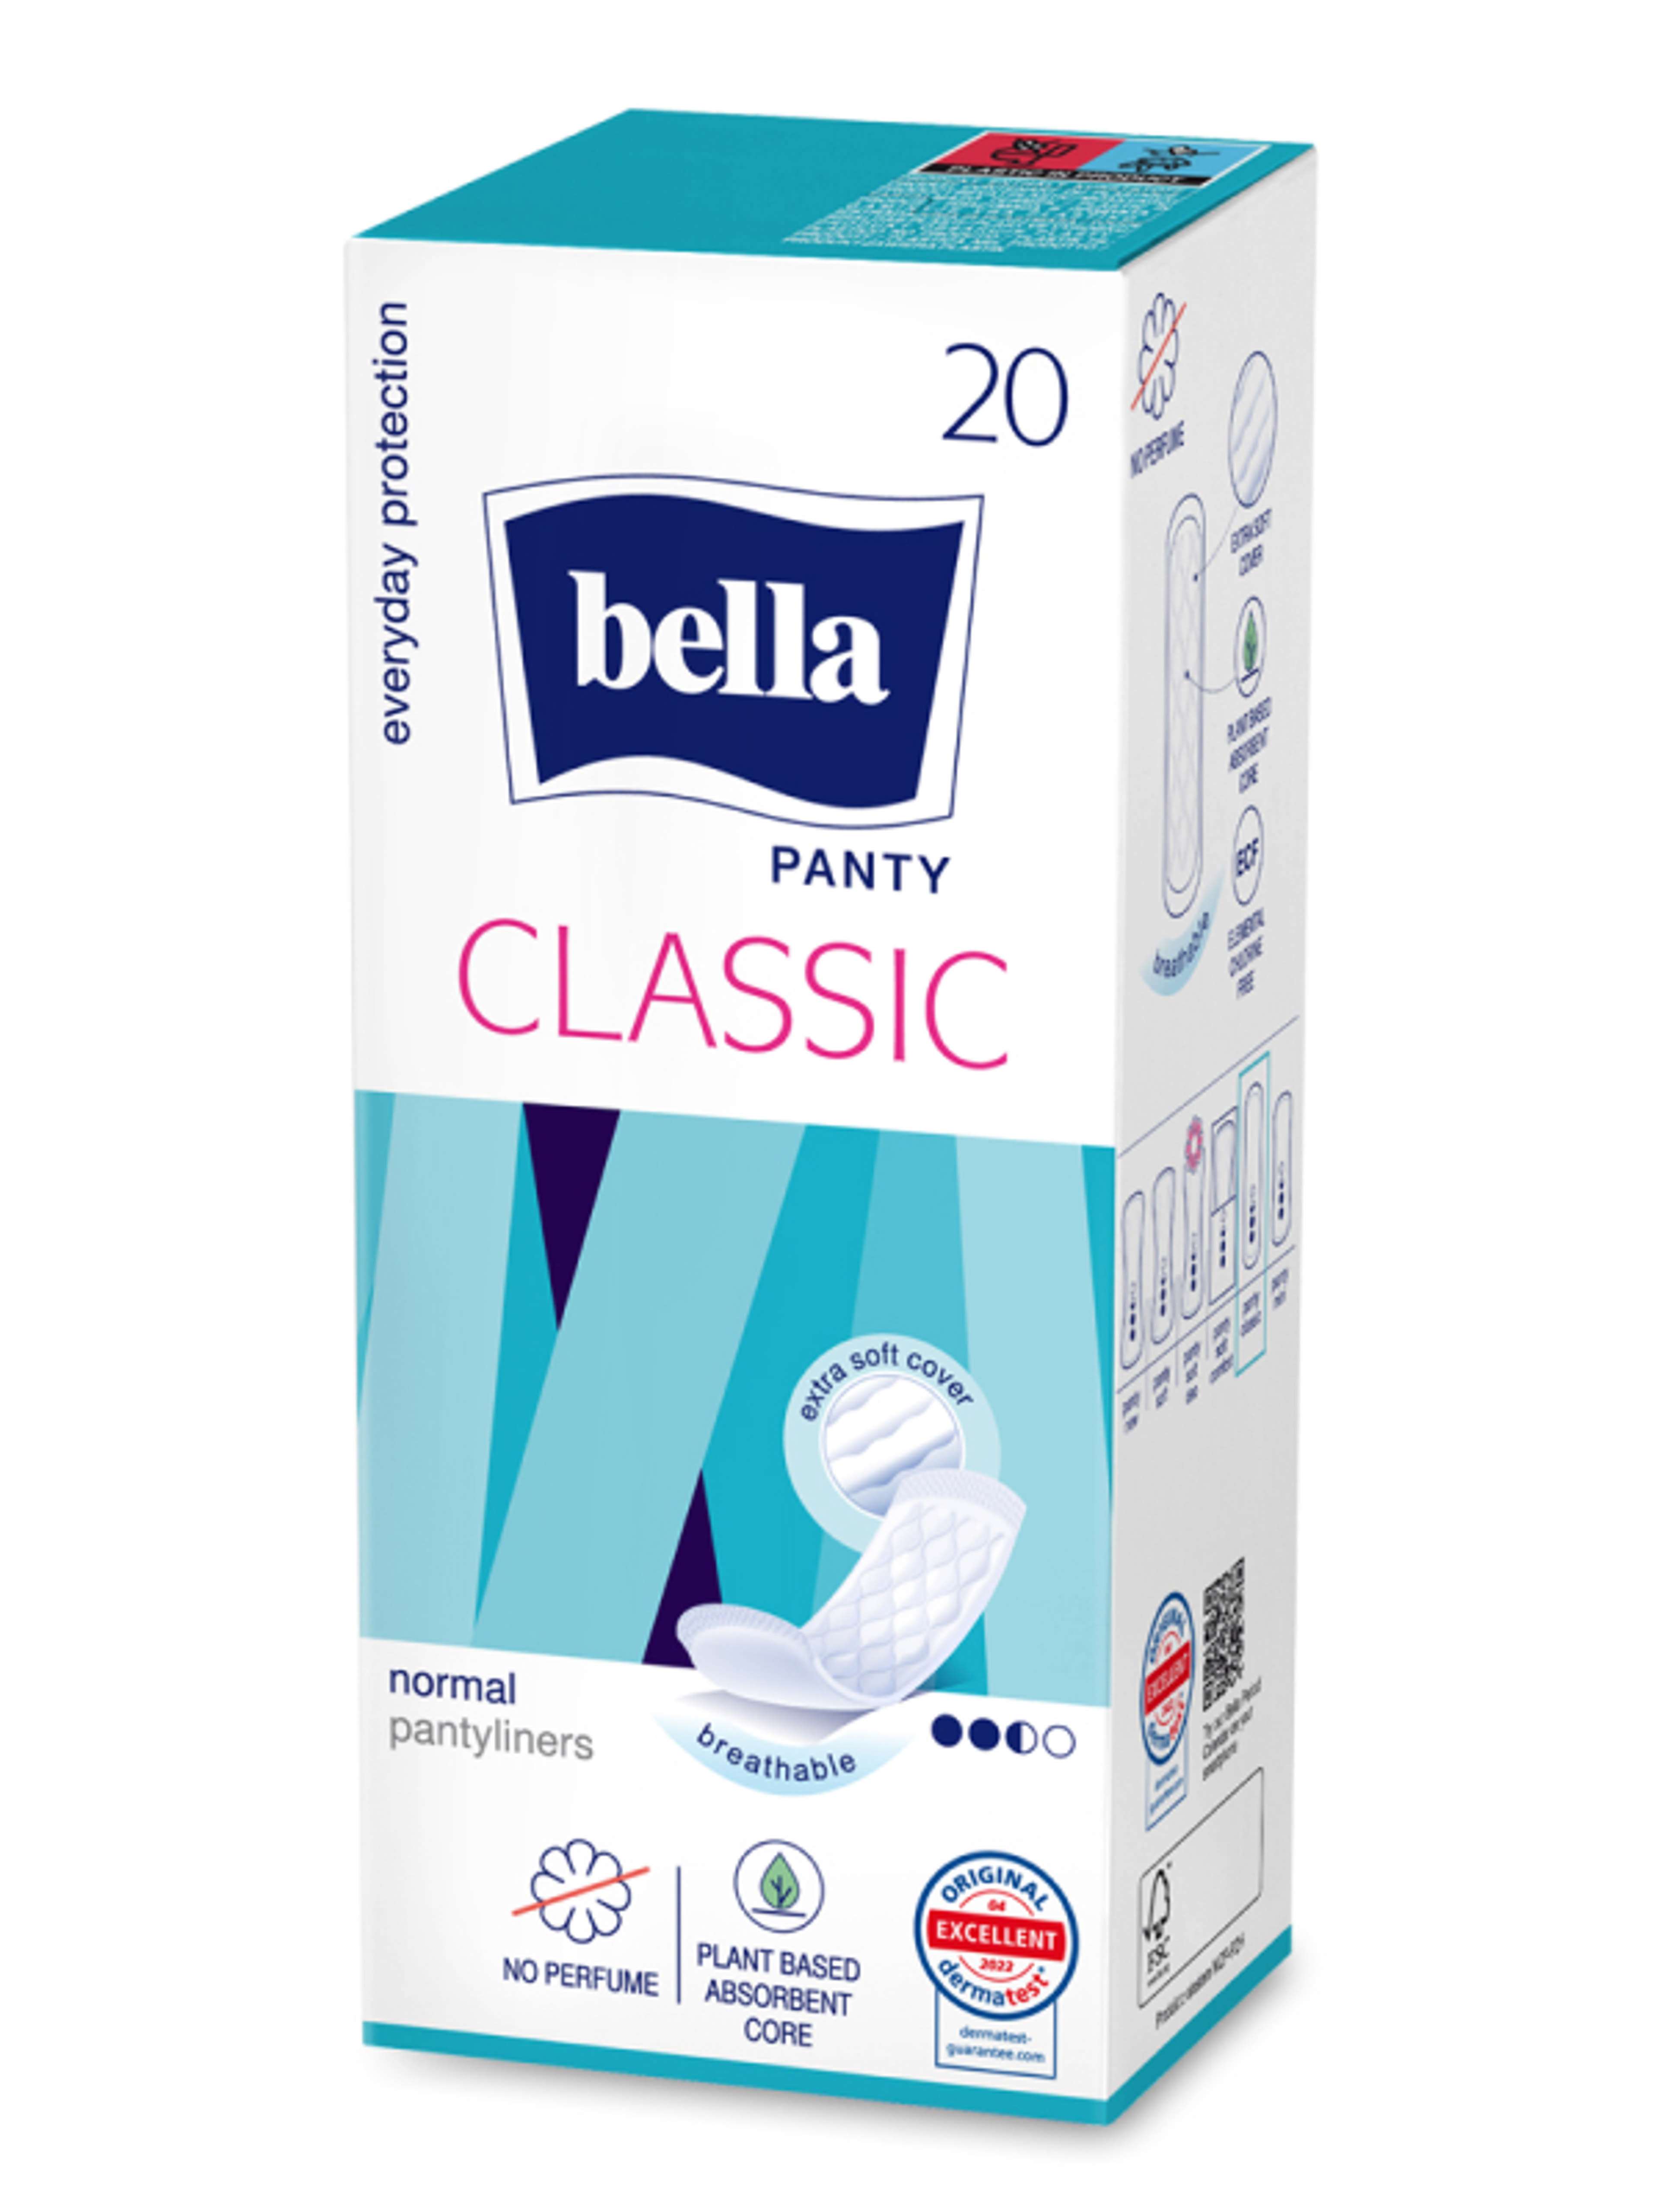 Bella Panty Classic tisztasági betét - 20 db